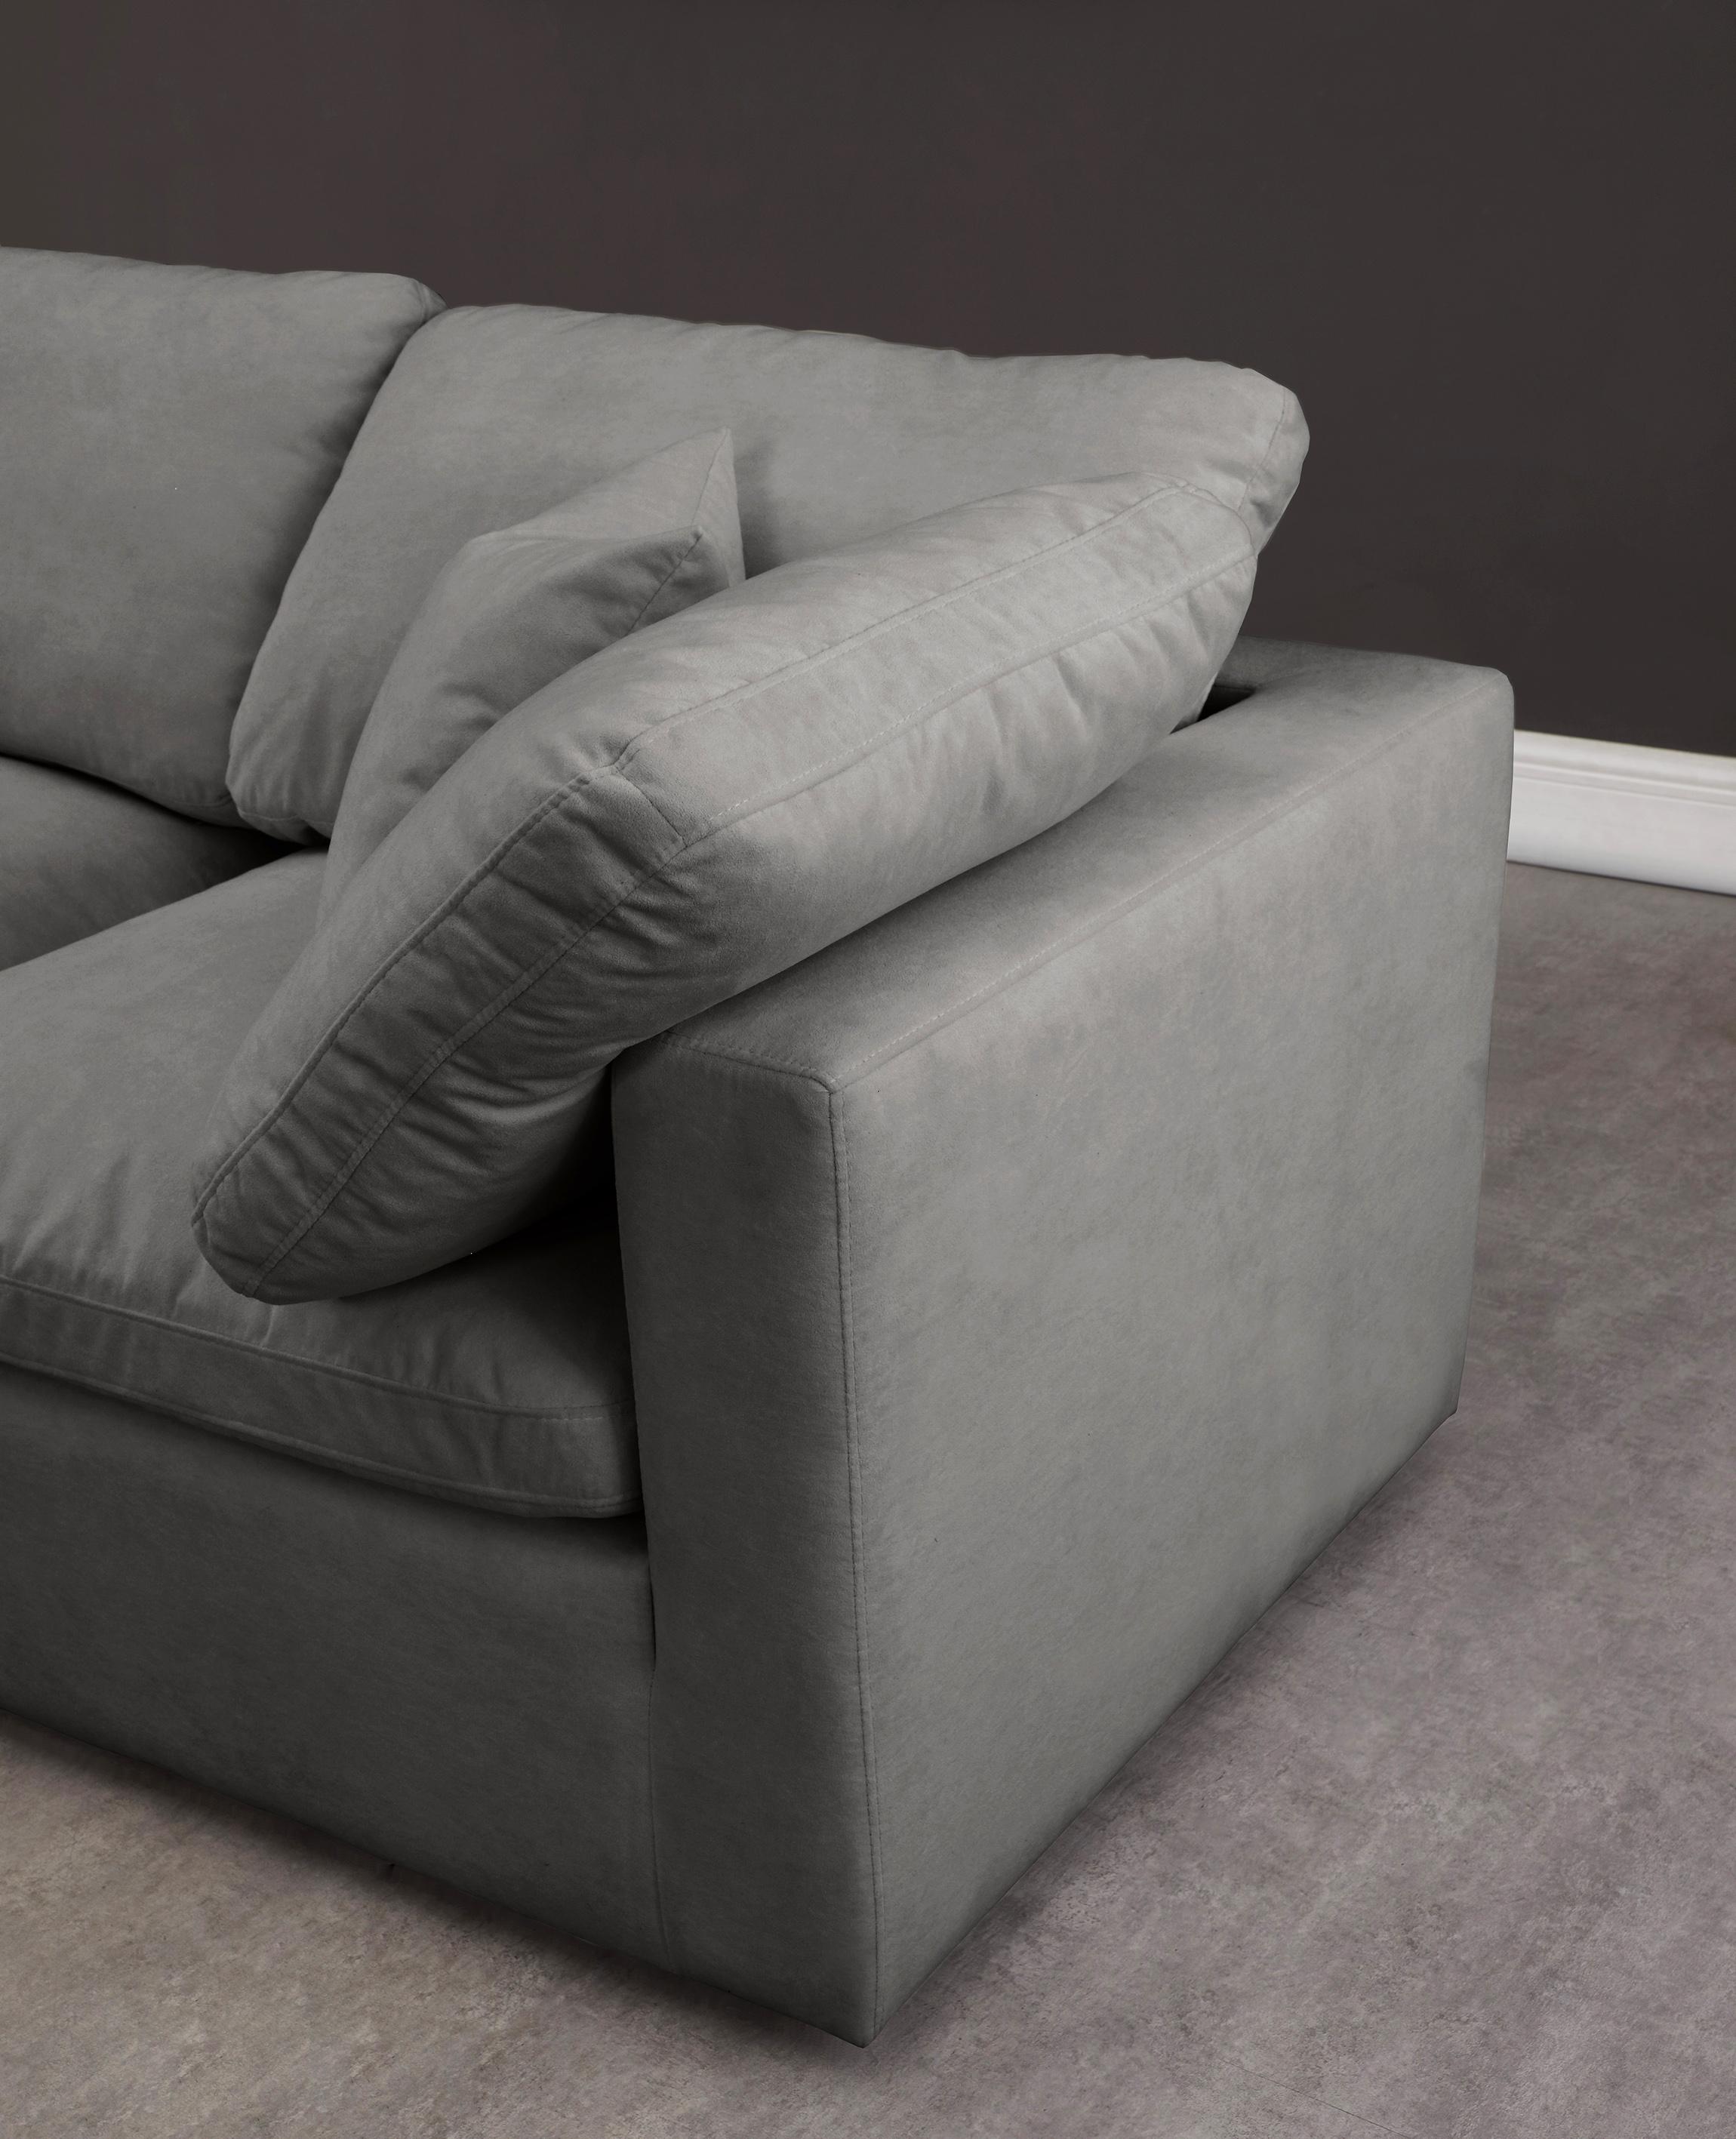 

    
GREY-Sec-Cloud Soflex Modular Sectional Sofa
